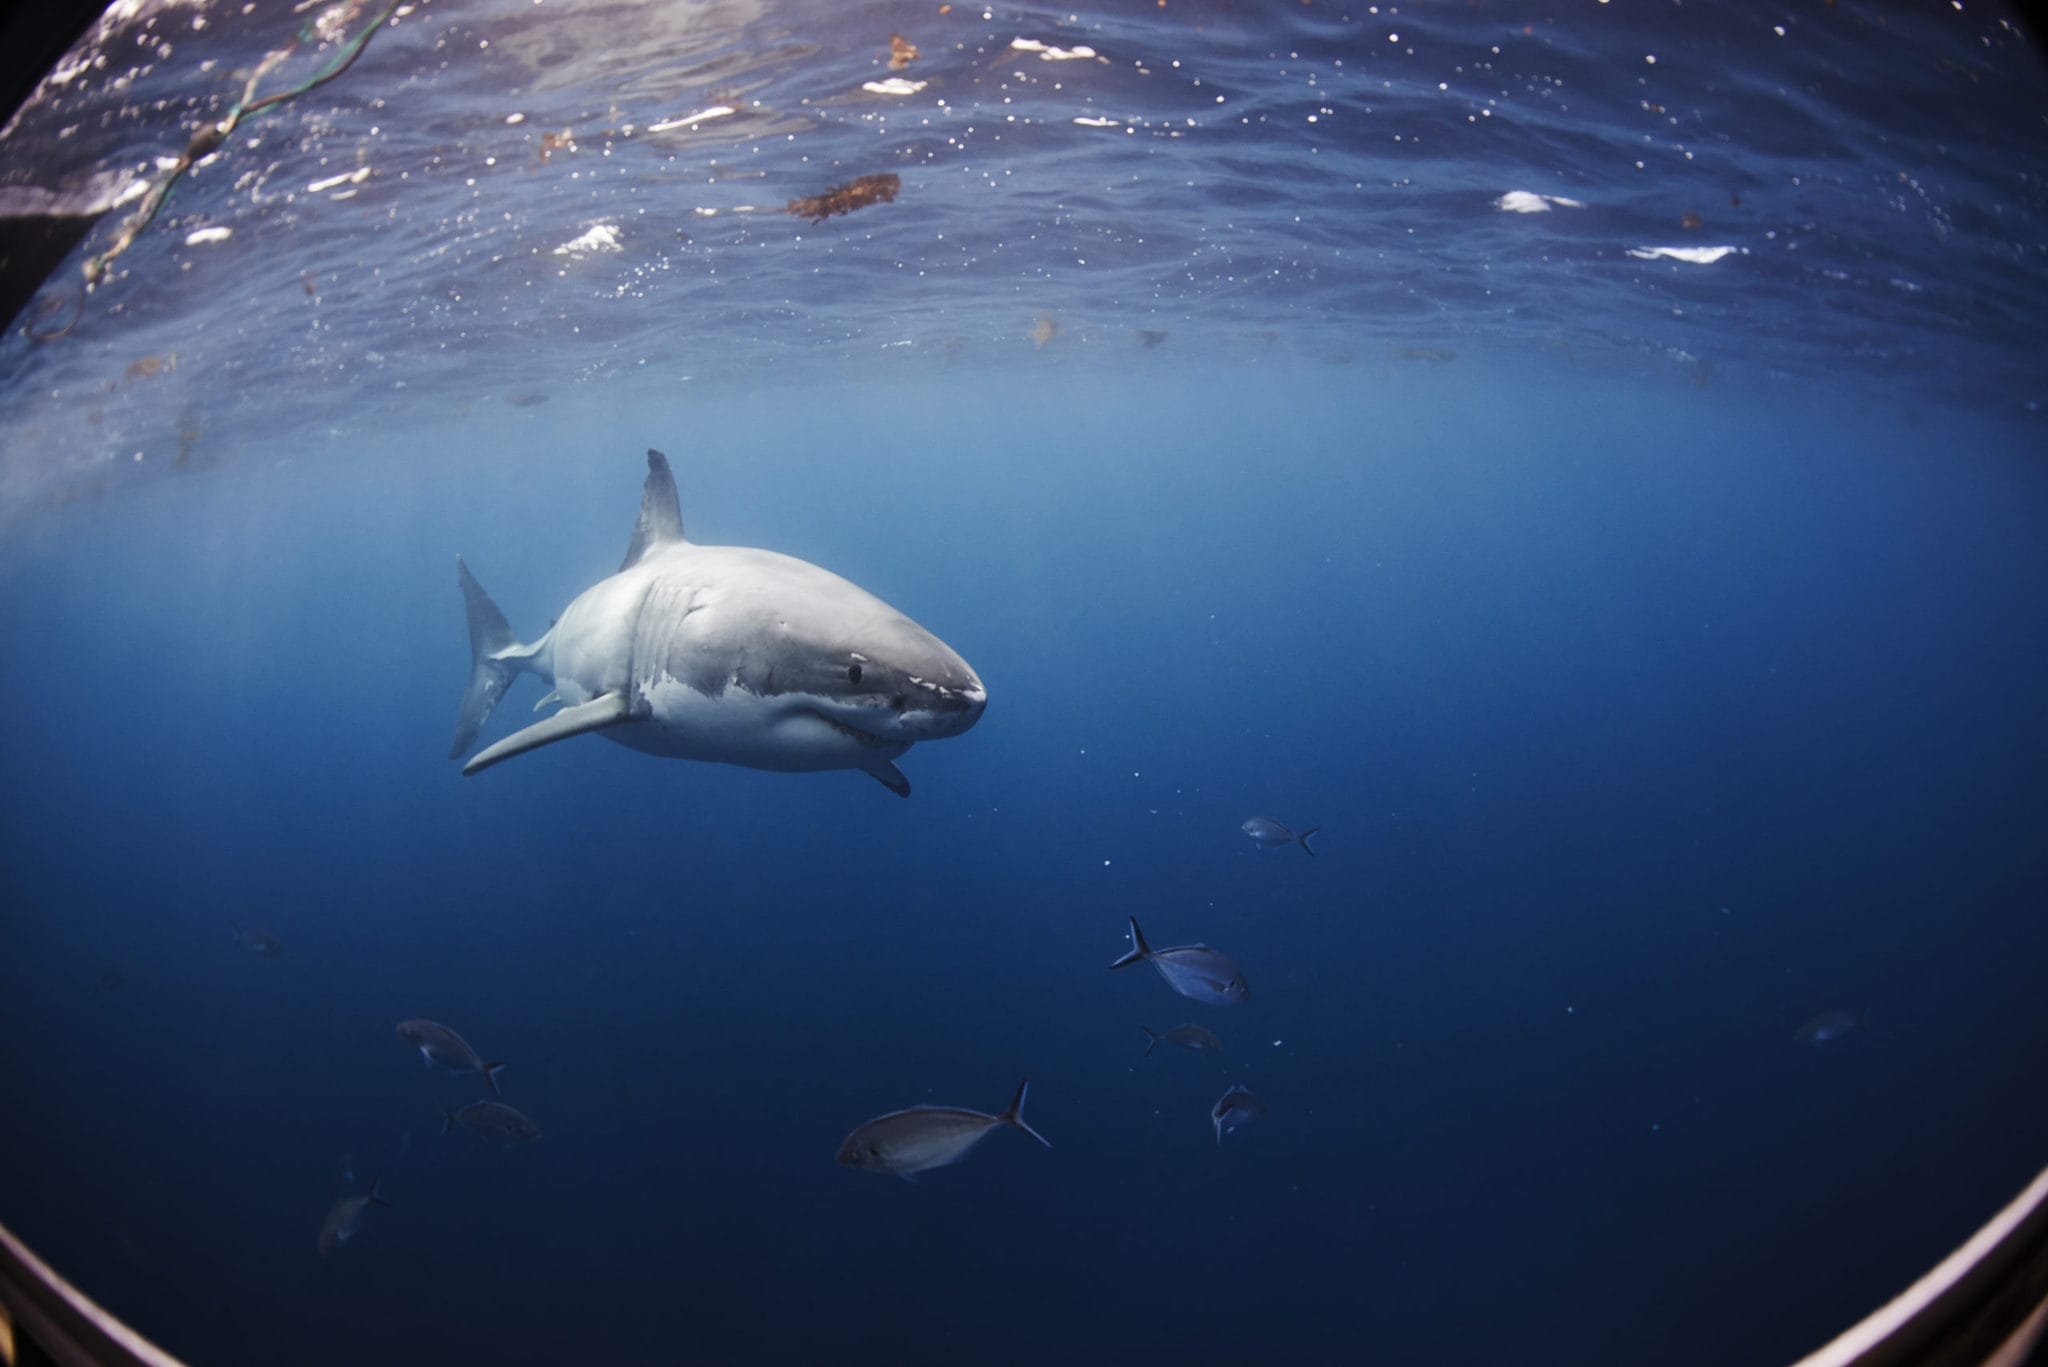 The revered Great White Shark of Neptune Islands